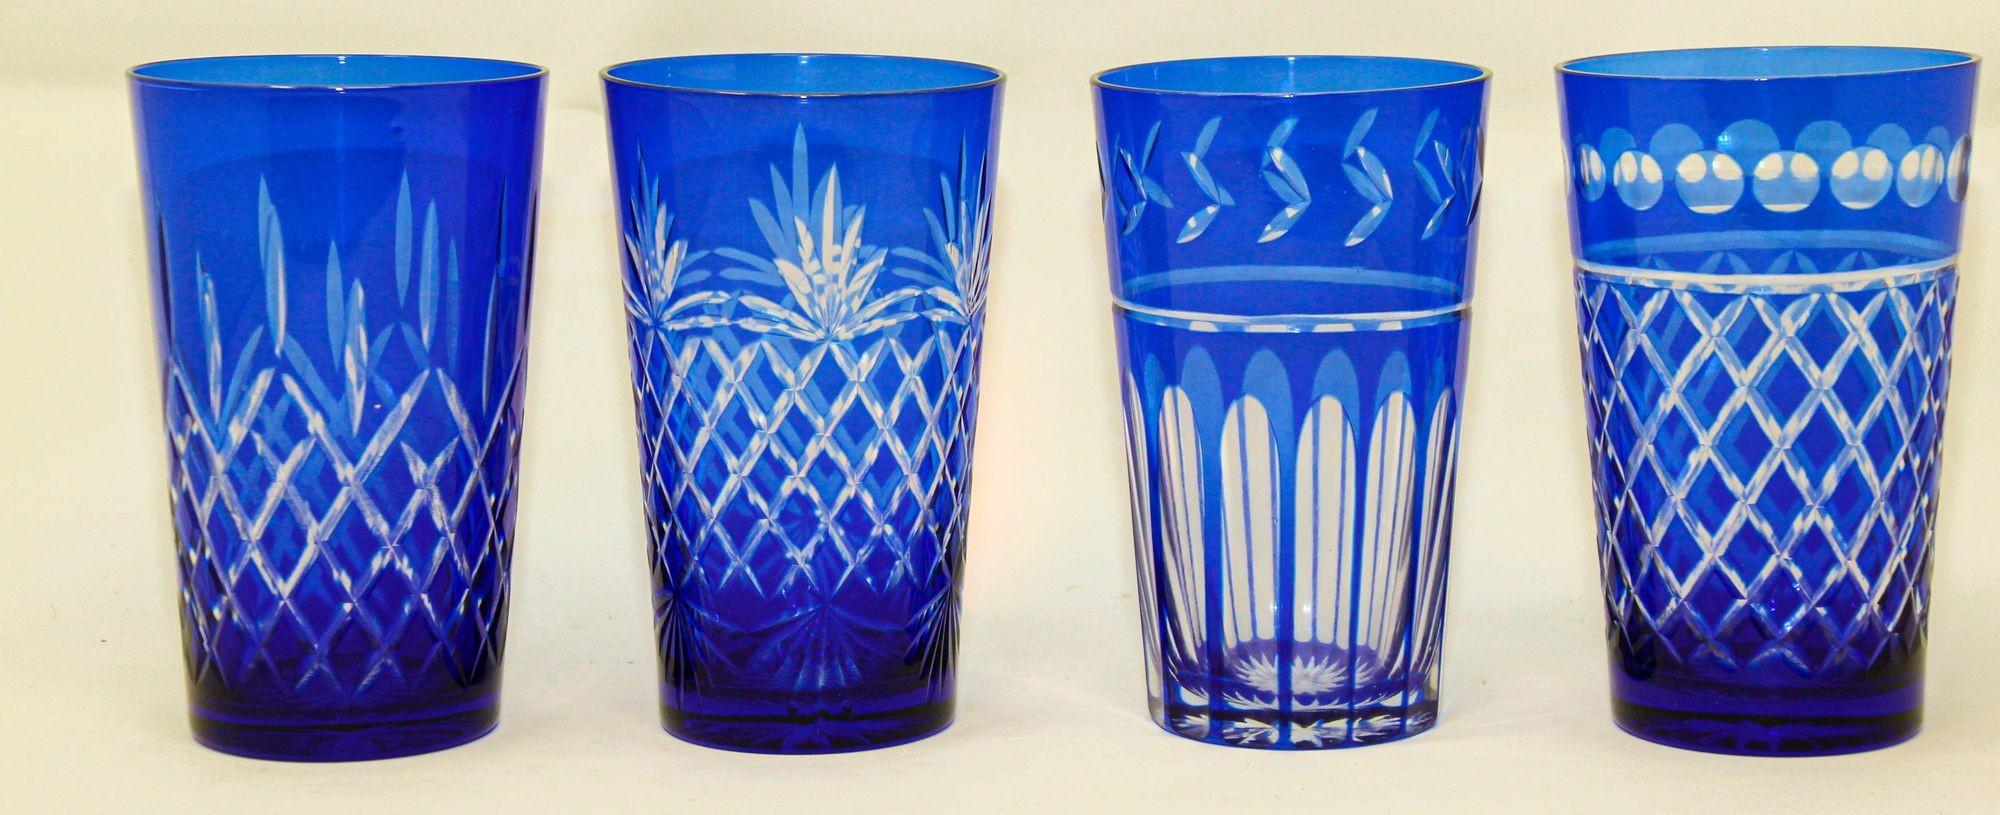 Ensemble de onze verres en cristal bleu cobalt taillé à la main, de style Baccarat.
Fabuleux verres à boire de style français Baccarat de couleur bleu cobalt profond et en cristal clair gravé, parfaits pour l'eau ou les grands cocktails.
Fabriqué